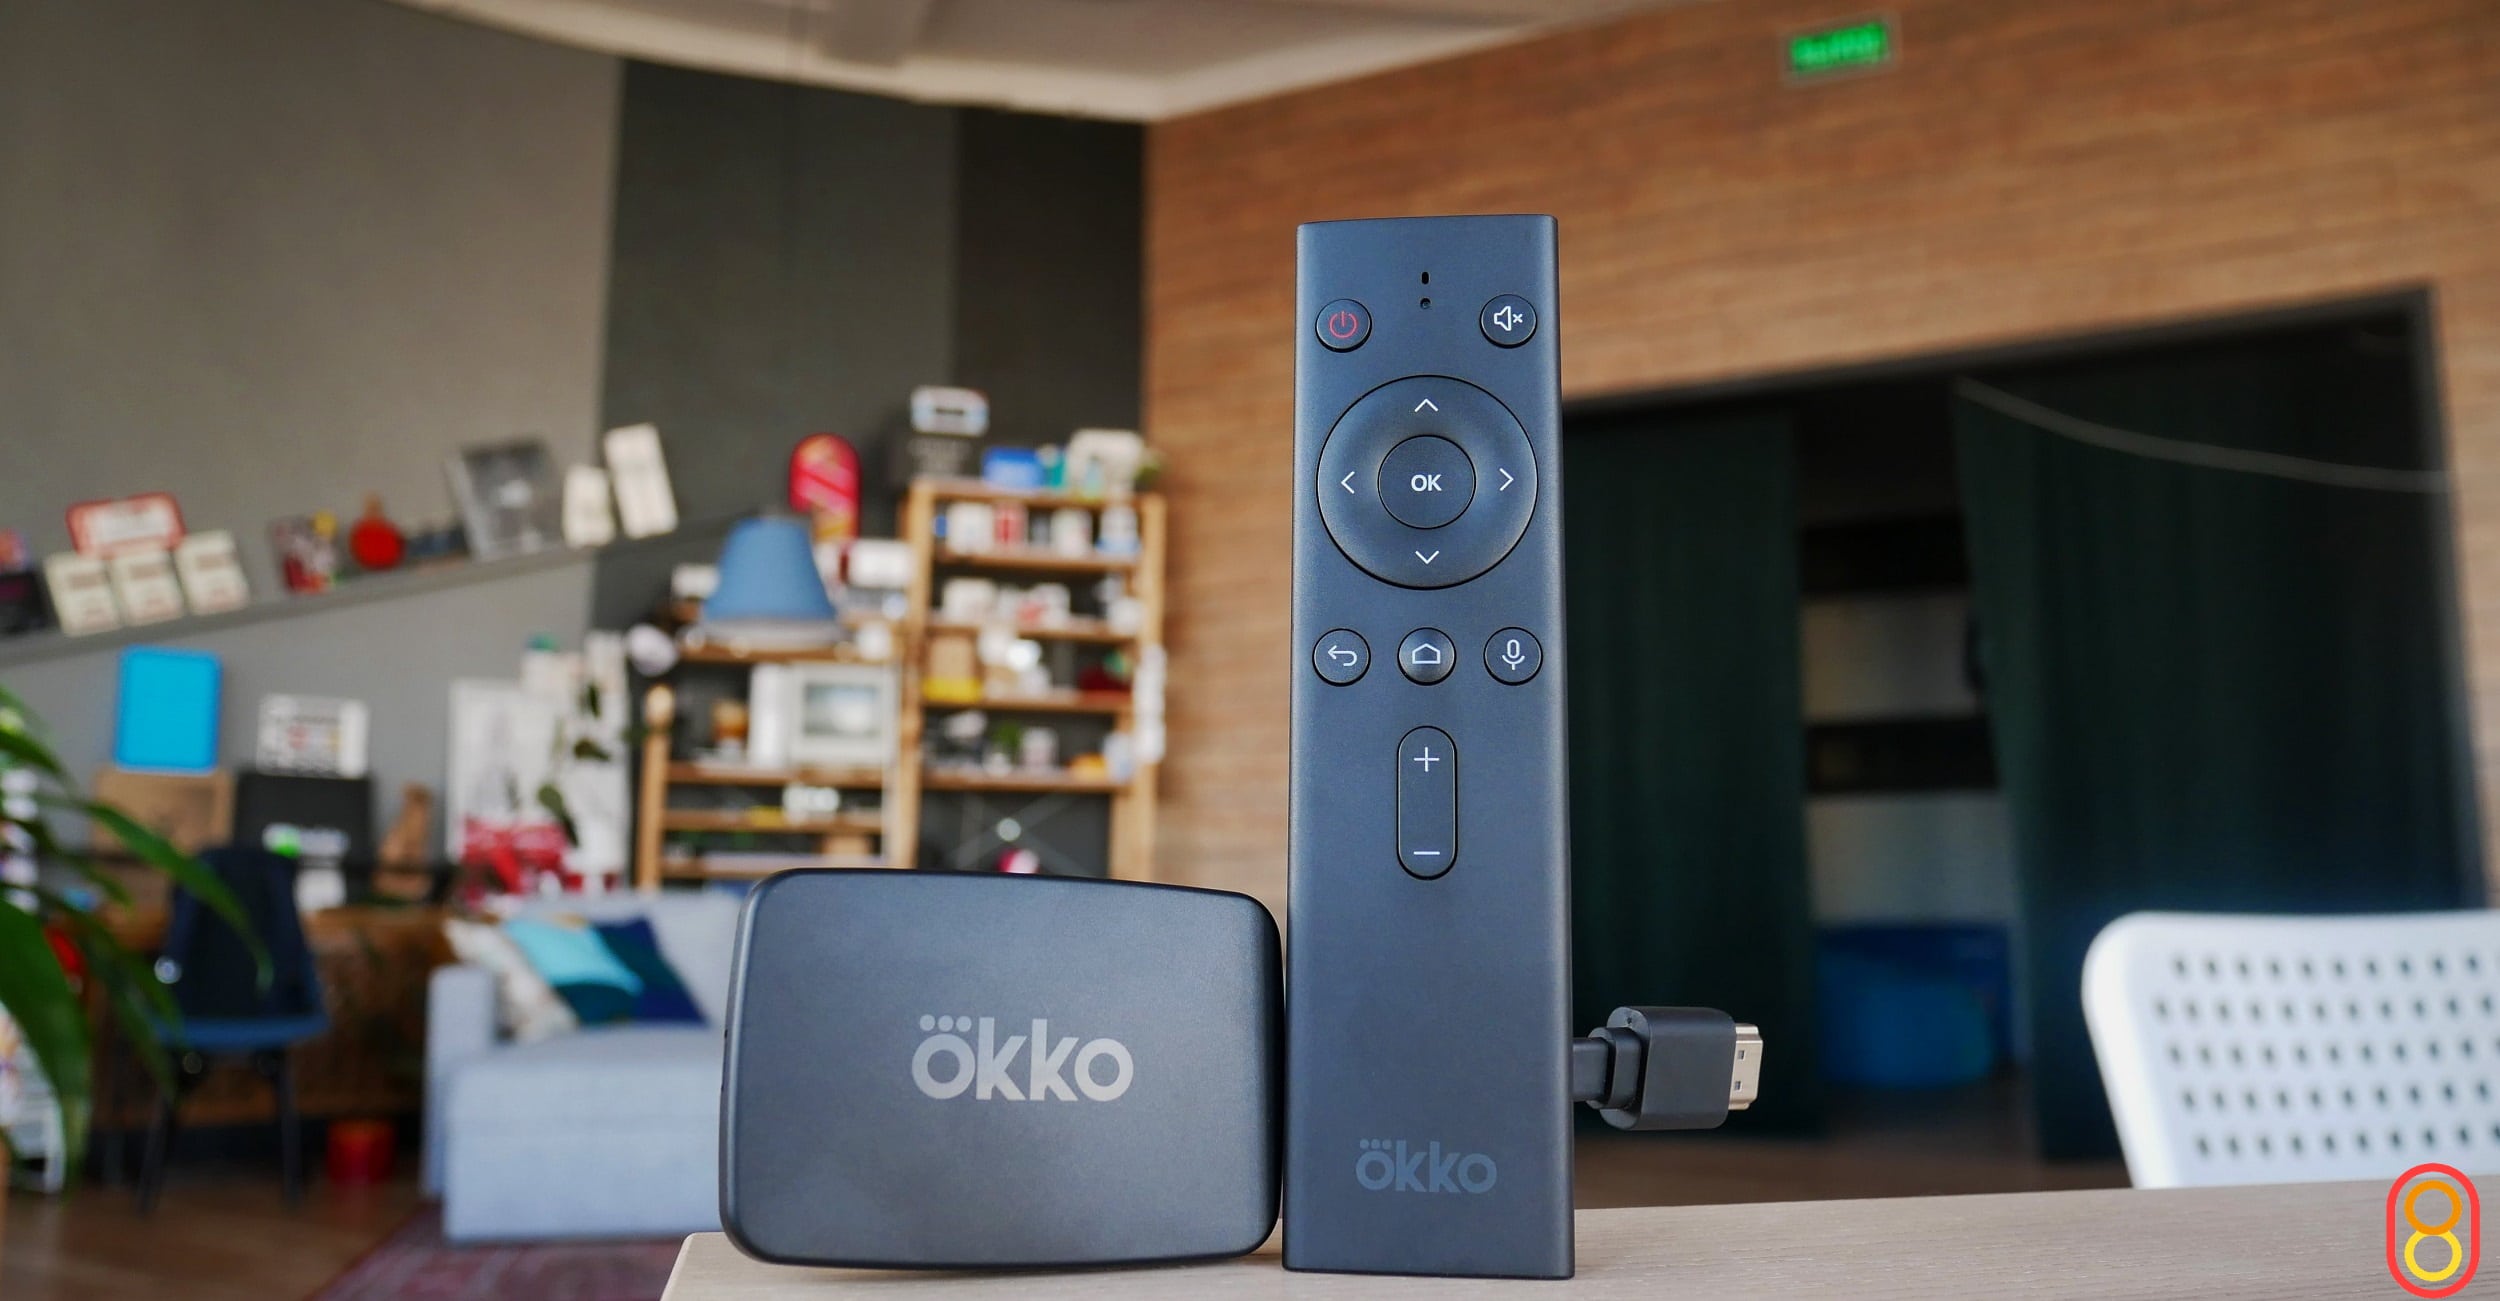 Okko Smart Box